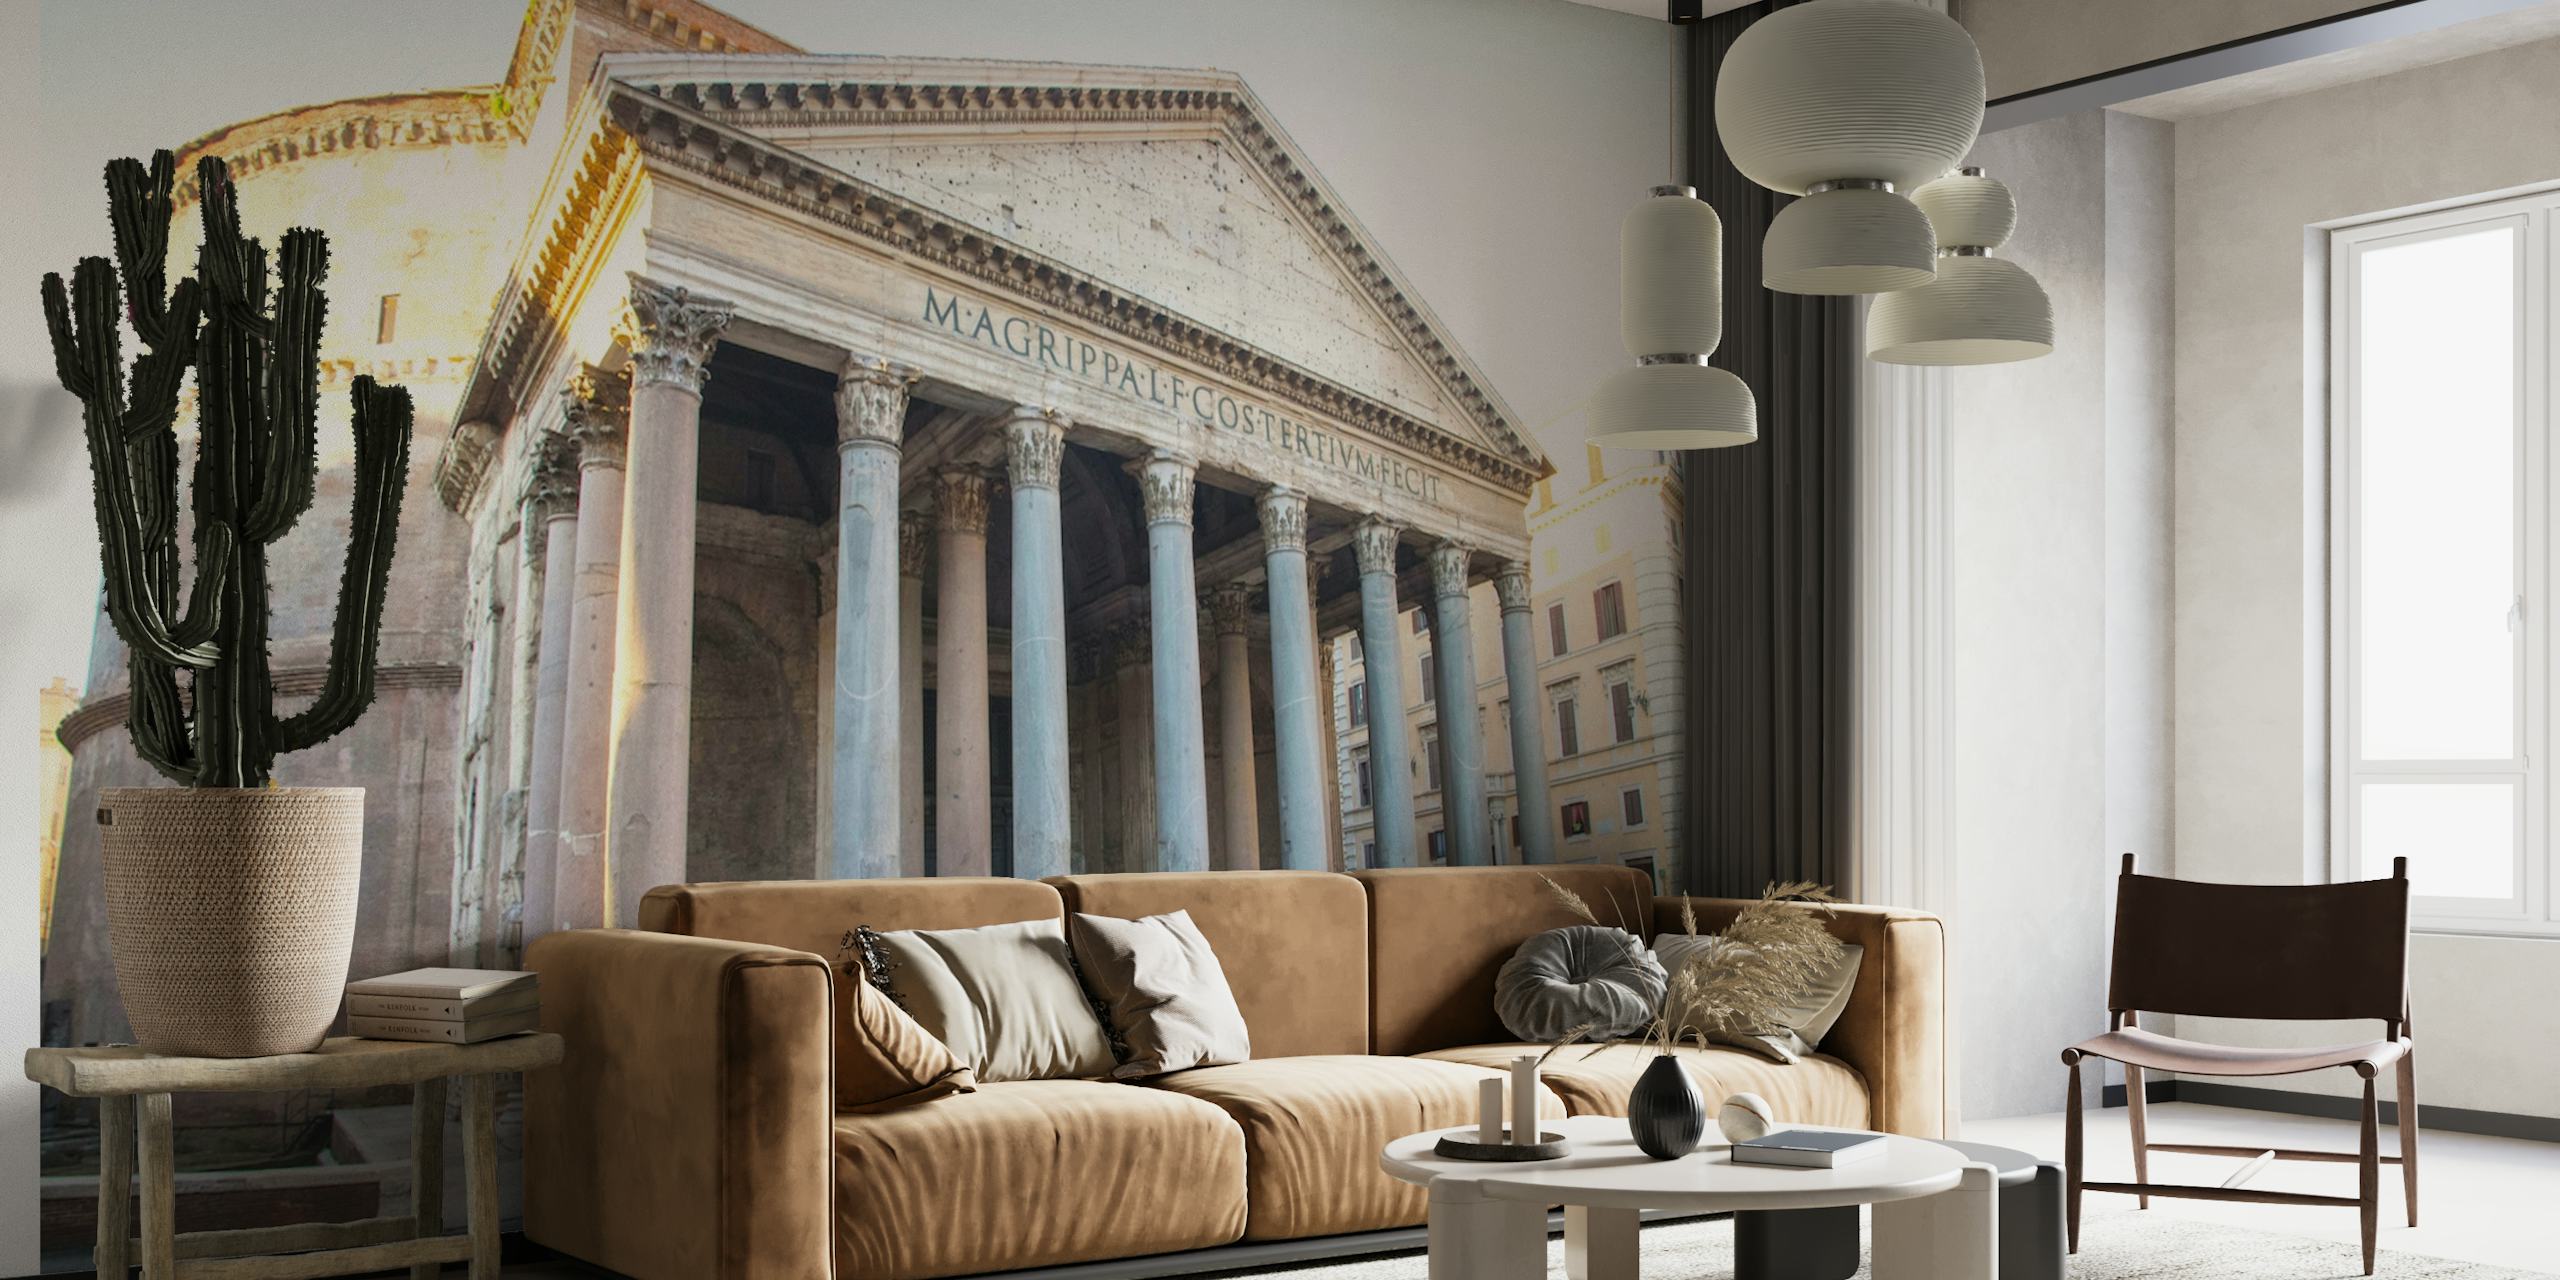 Zidna slika Slavni Panteon u Rimu koja prikazuje pročelje drevnog hrama s njegovim klasičnim stupovima.